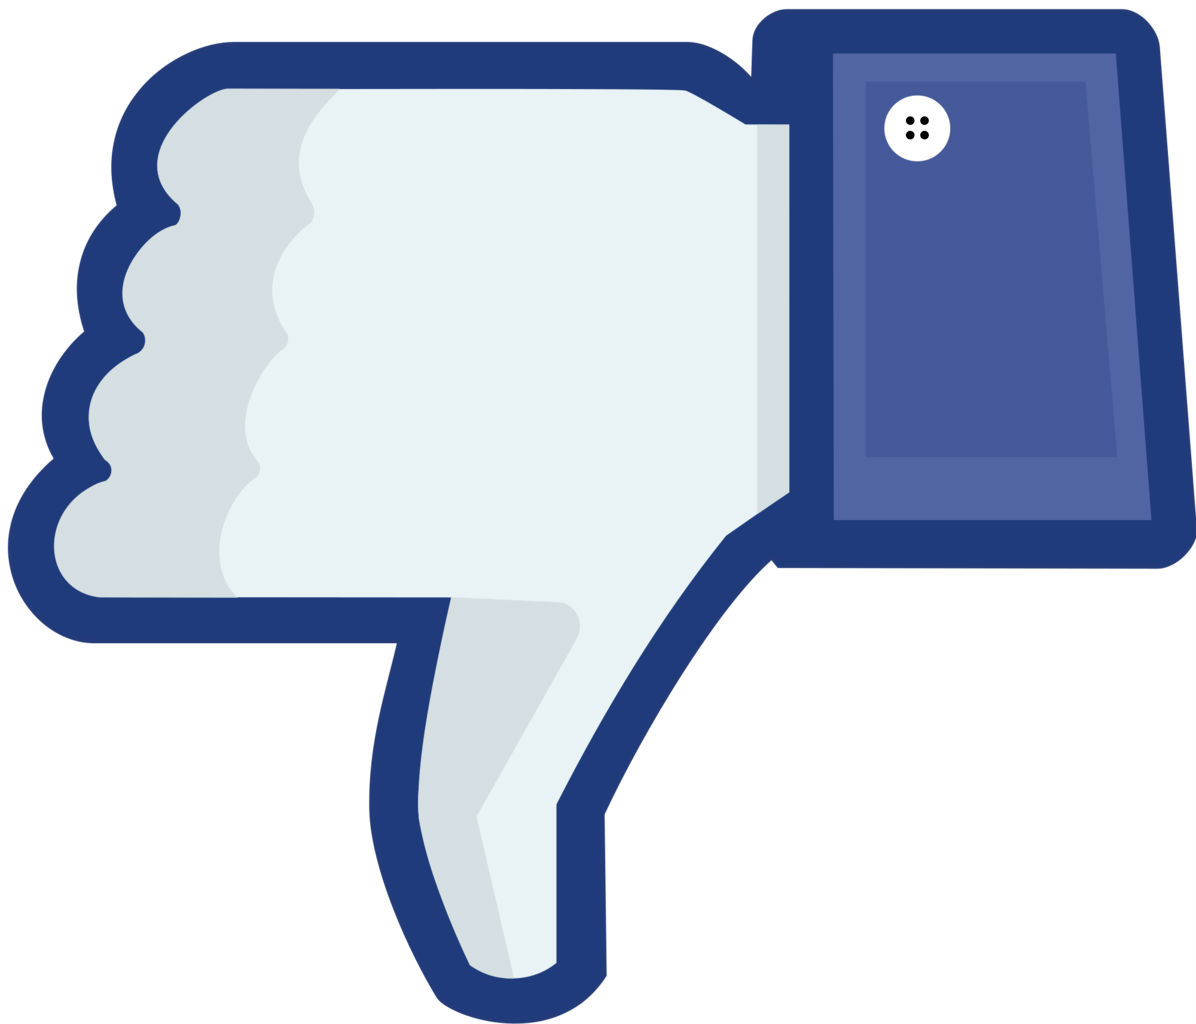 más de 100 millones de cuentas falsas en facebook